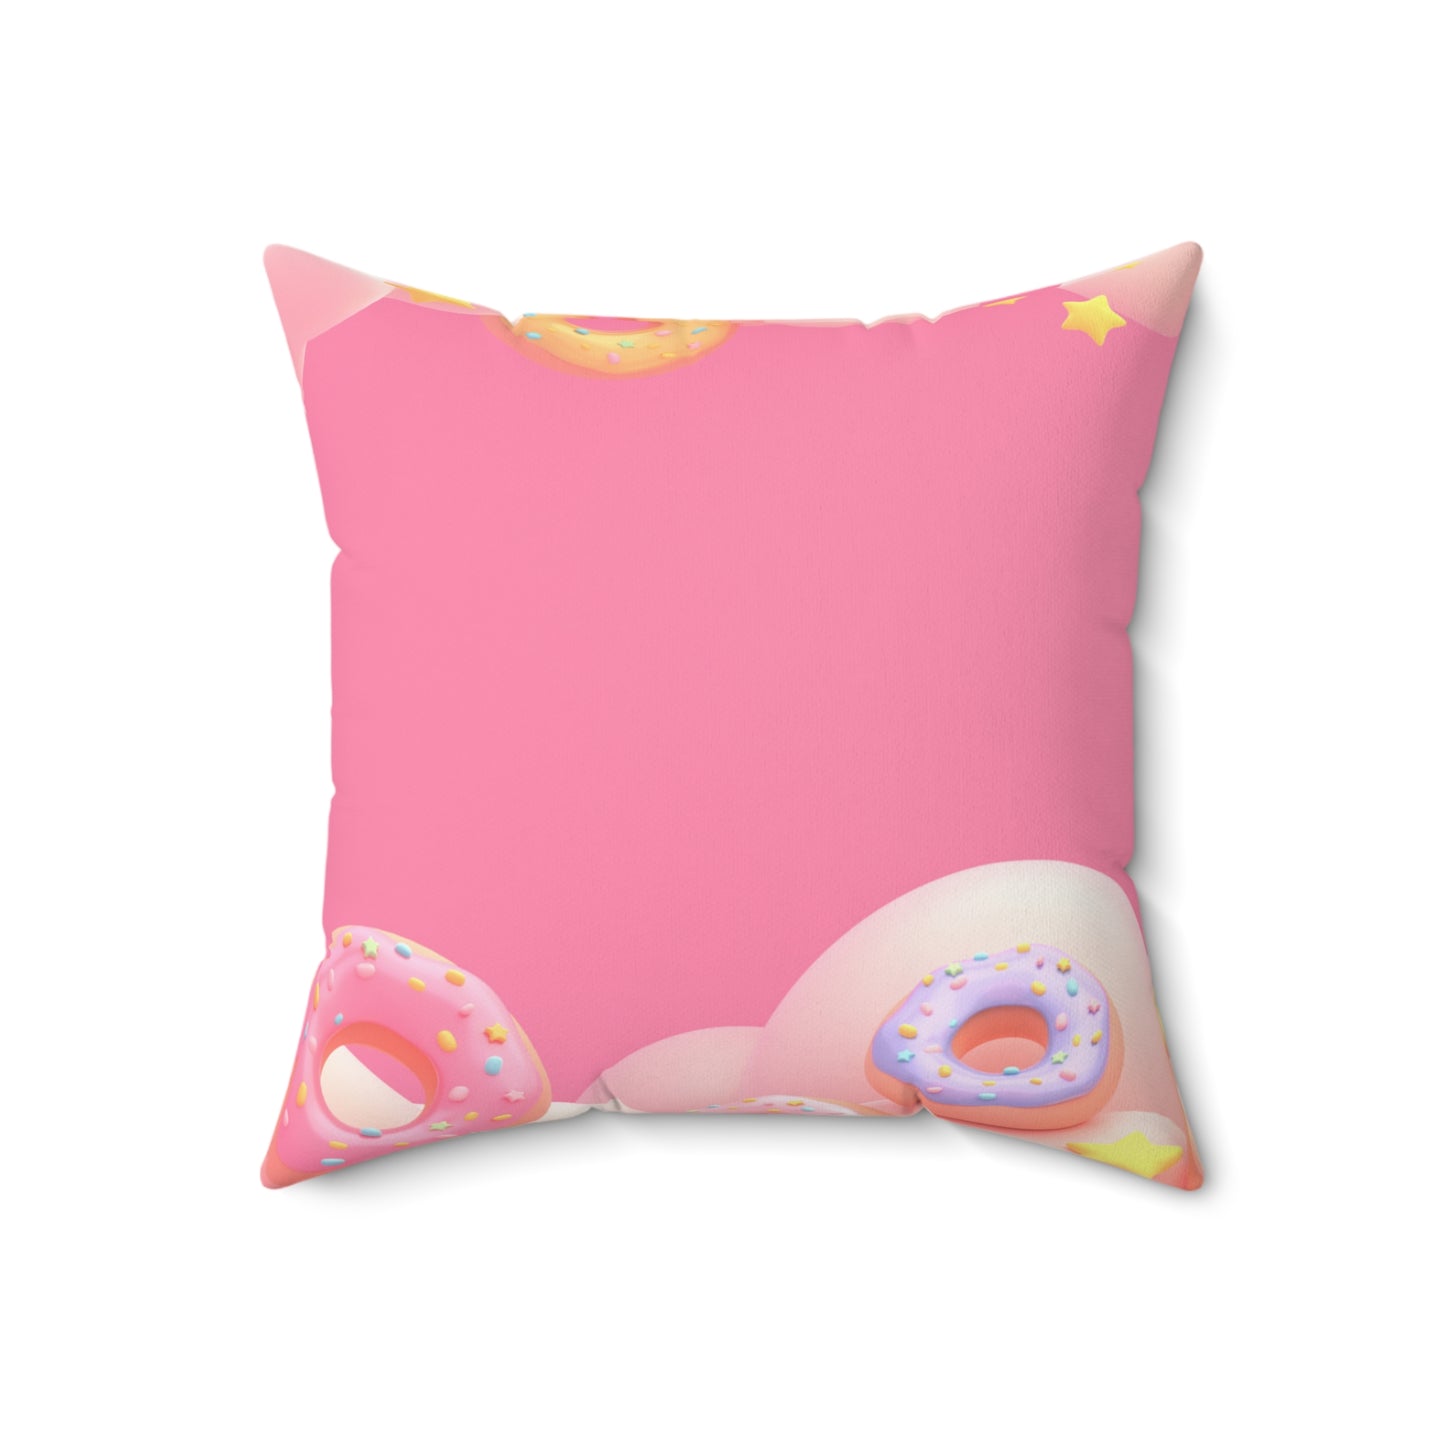 Almohada cuadrada Pink Donut Dreams